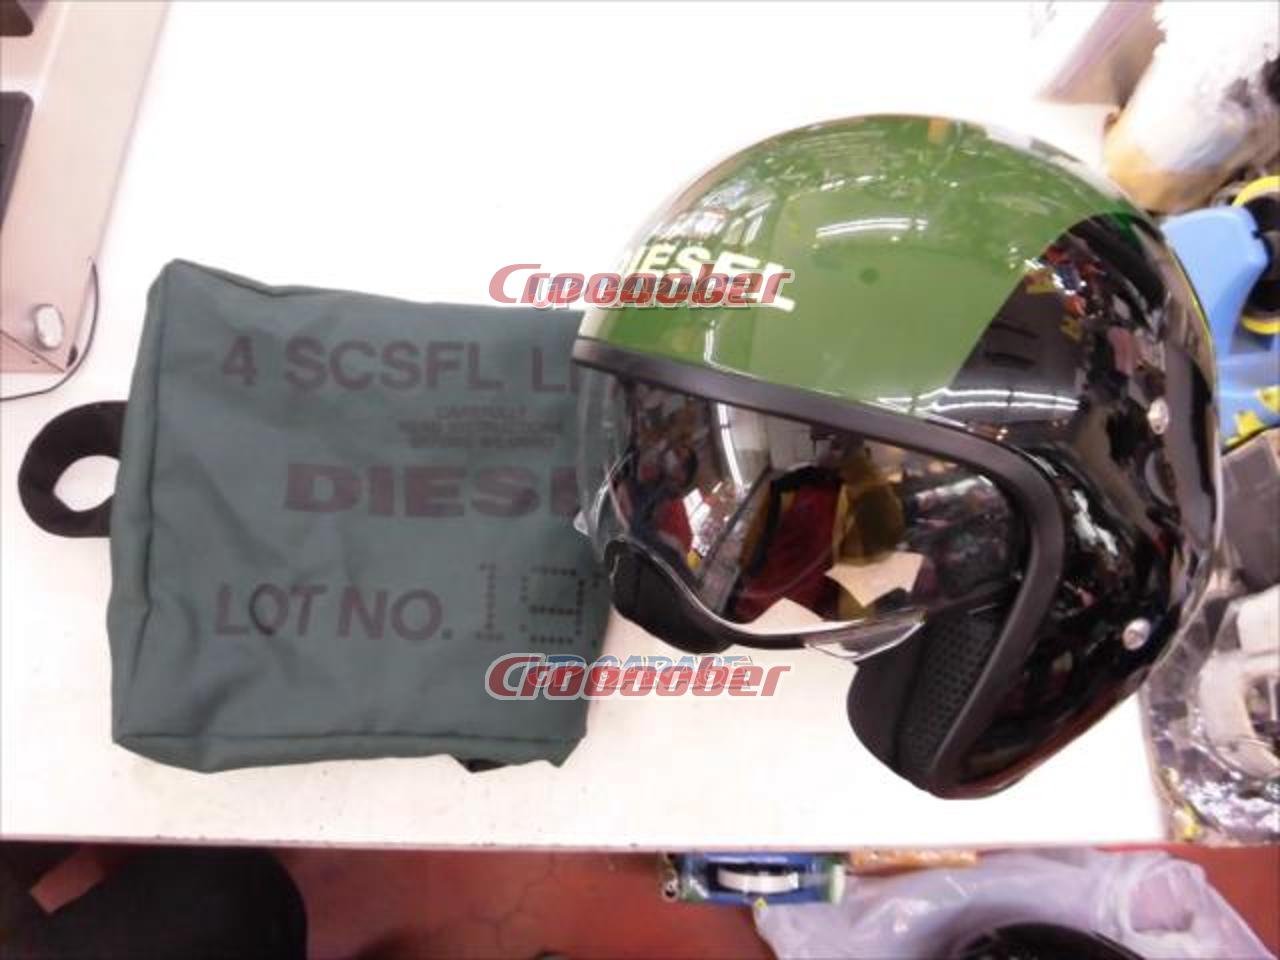 公式販売中 AGV DIESEL ジェットヘルメット Mサイズ www.rgolden.com.br